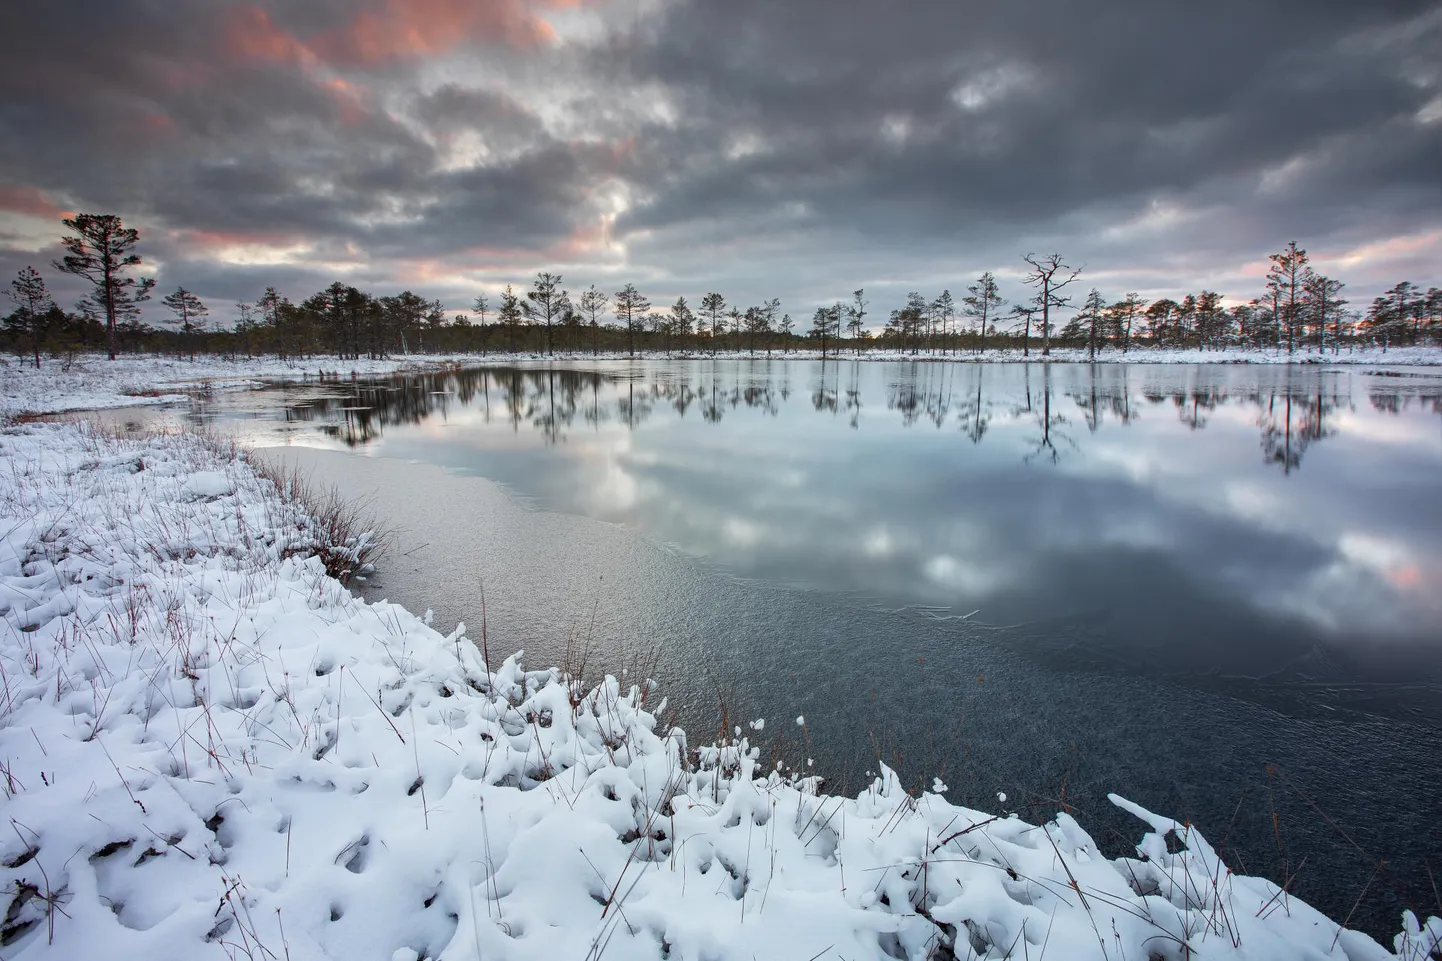 Andrei Reinol on rahvusvaheliselt tunnustatud maastikufotograaf. Foto tänavuse talve esimesest lumest tegi ta Kõnnu Suursoos.